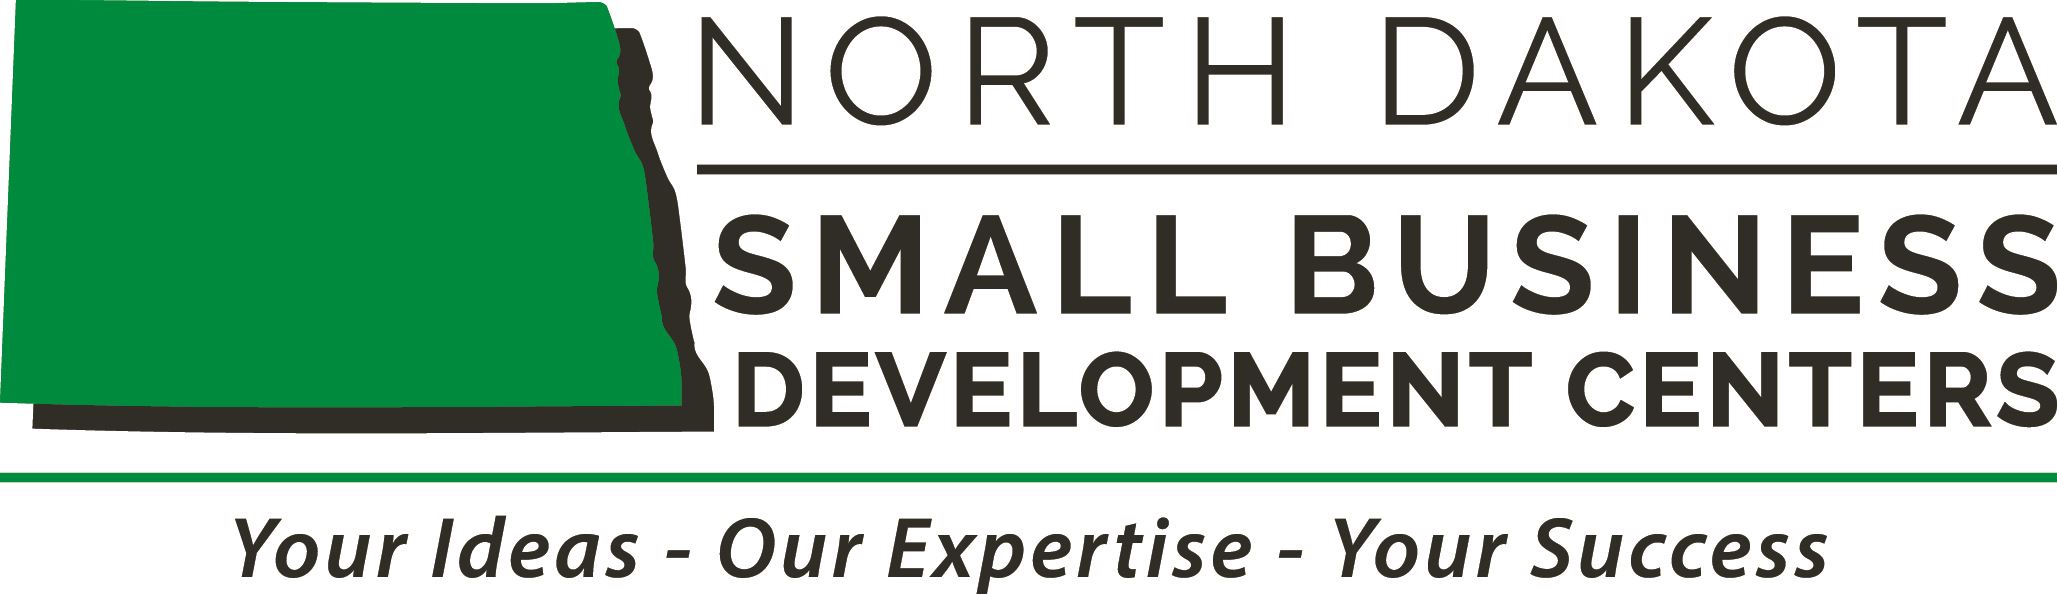 ND Small Business Development Center